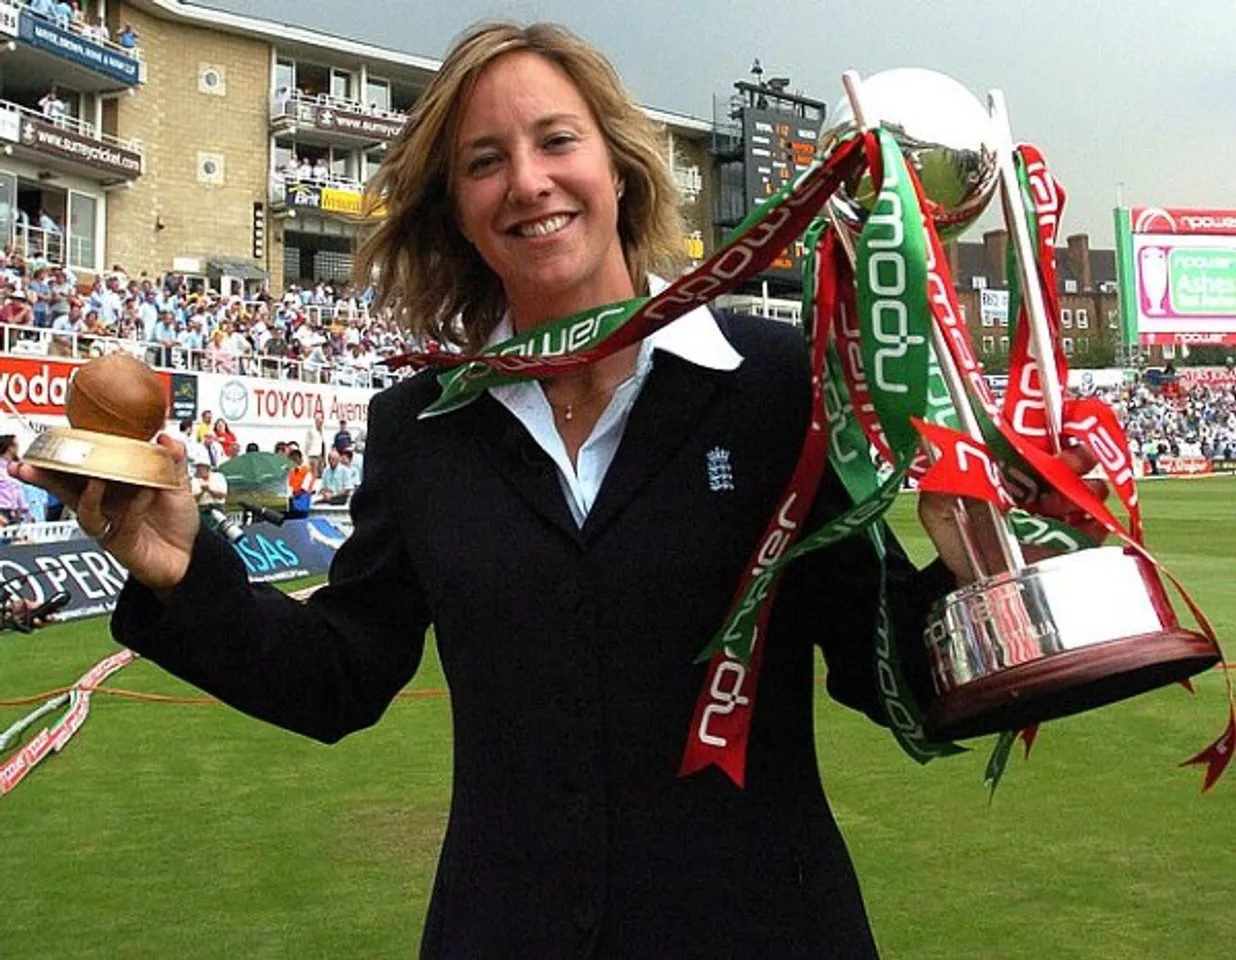 Cricketer Clare Connor